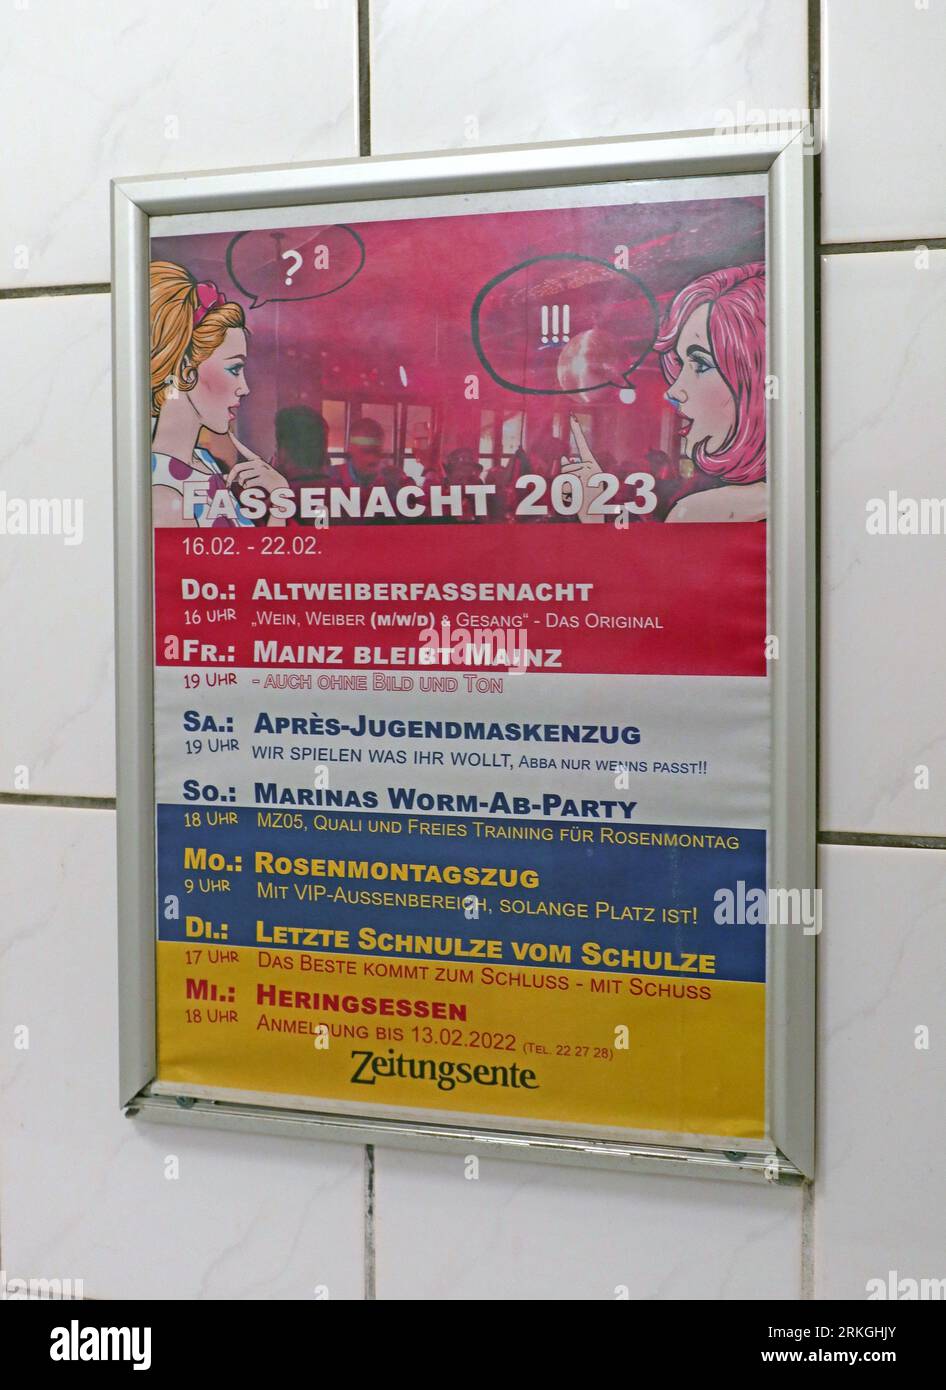 Orari del Fastnacht 2023 nella città di Magonza, Germania, dal 16 febbraio al 22 febbraio 2023 Foto Stock